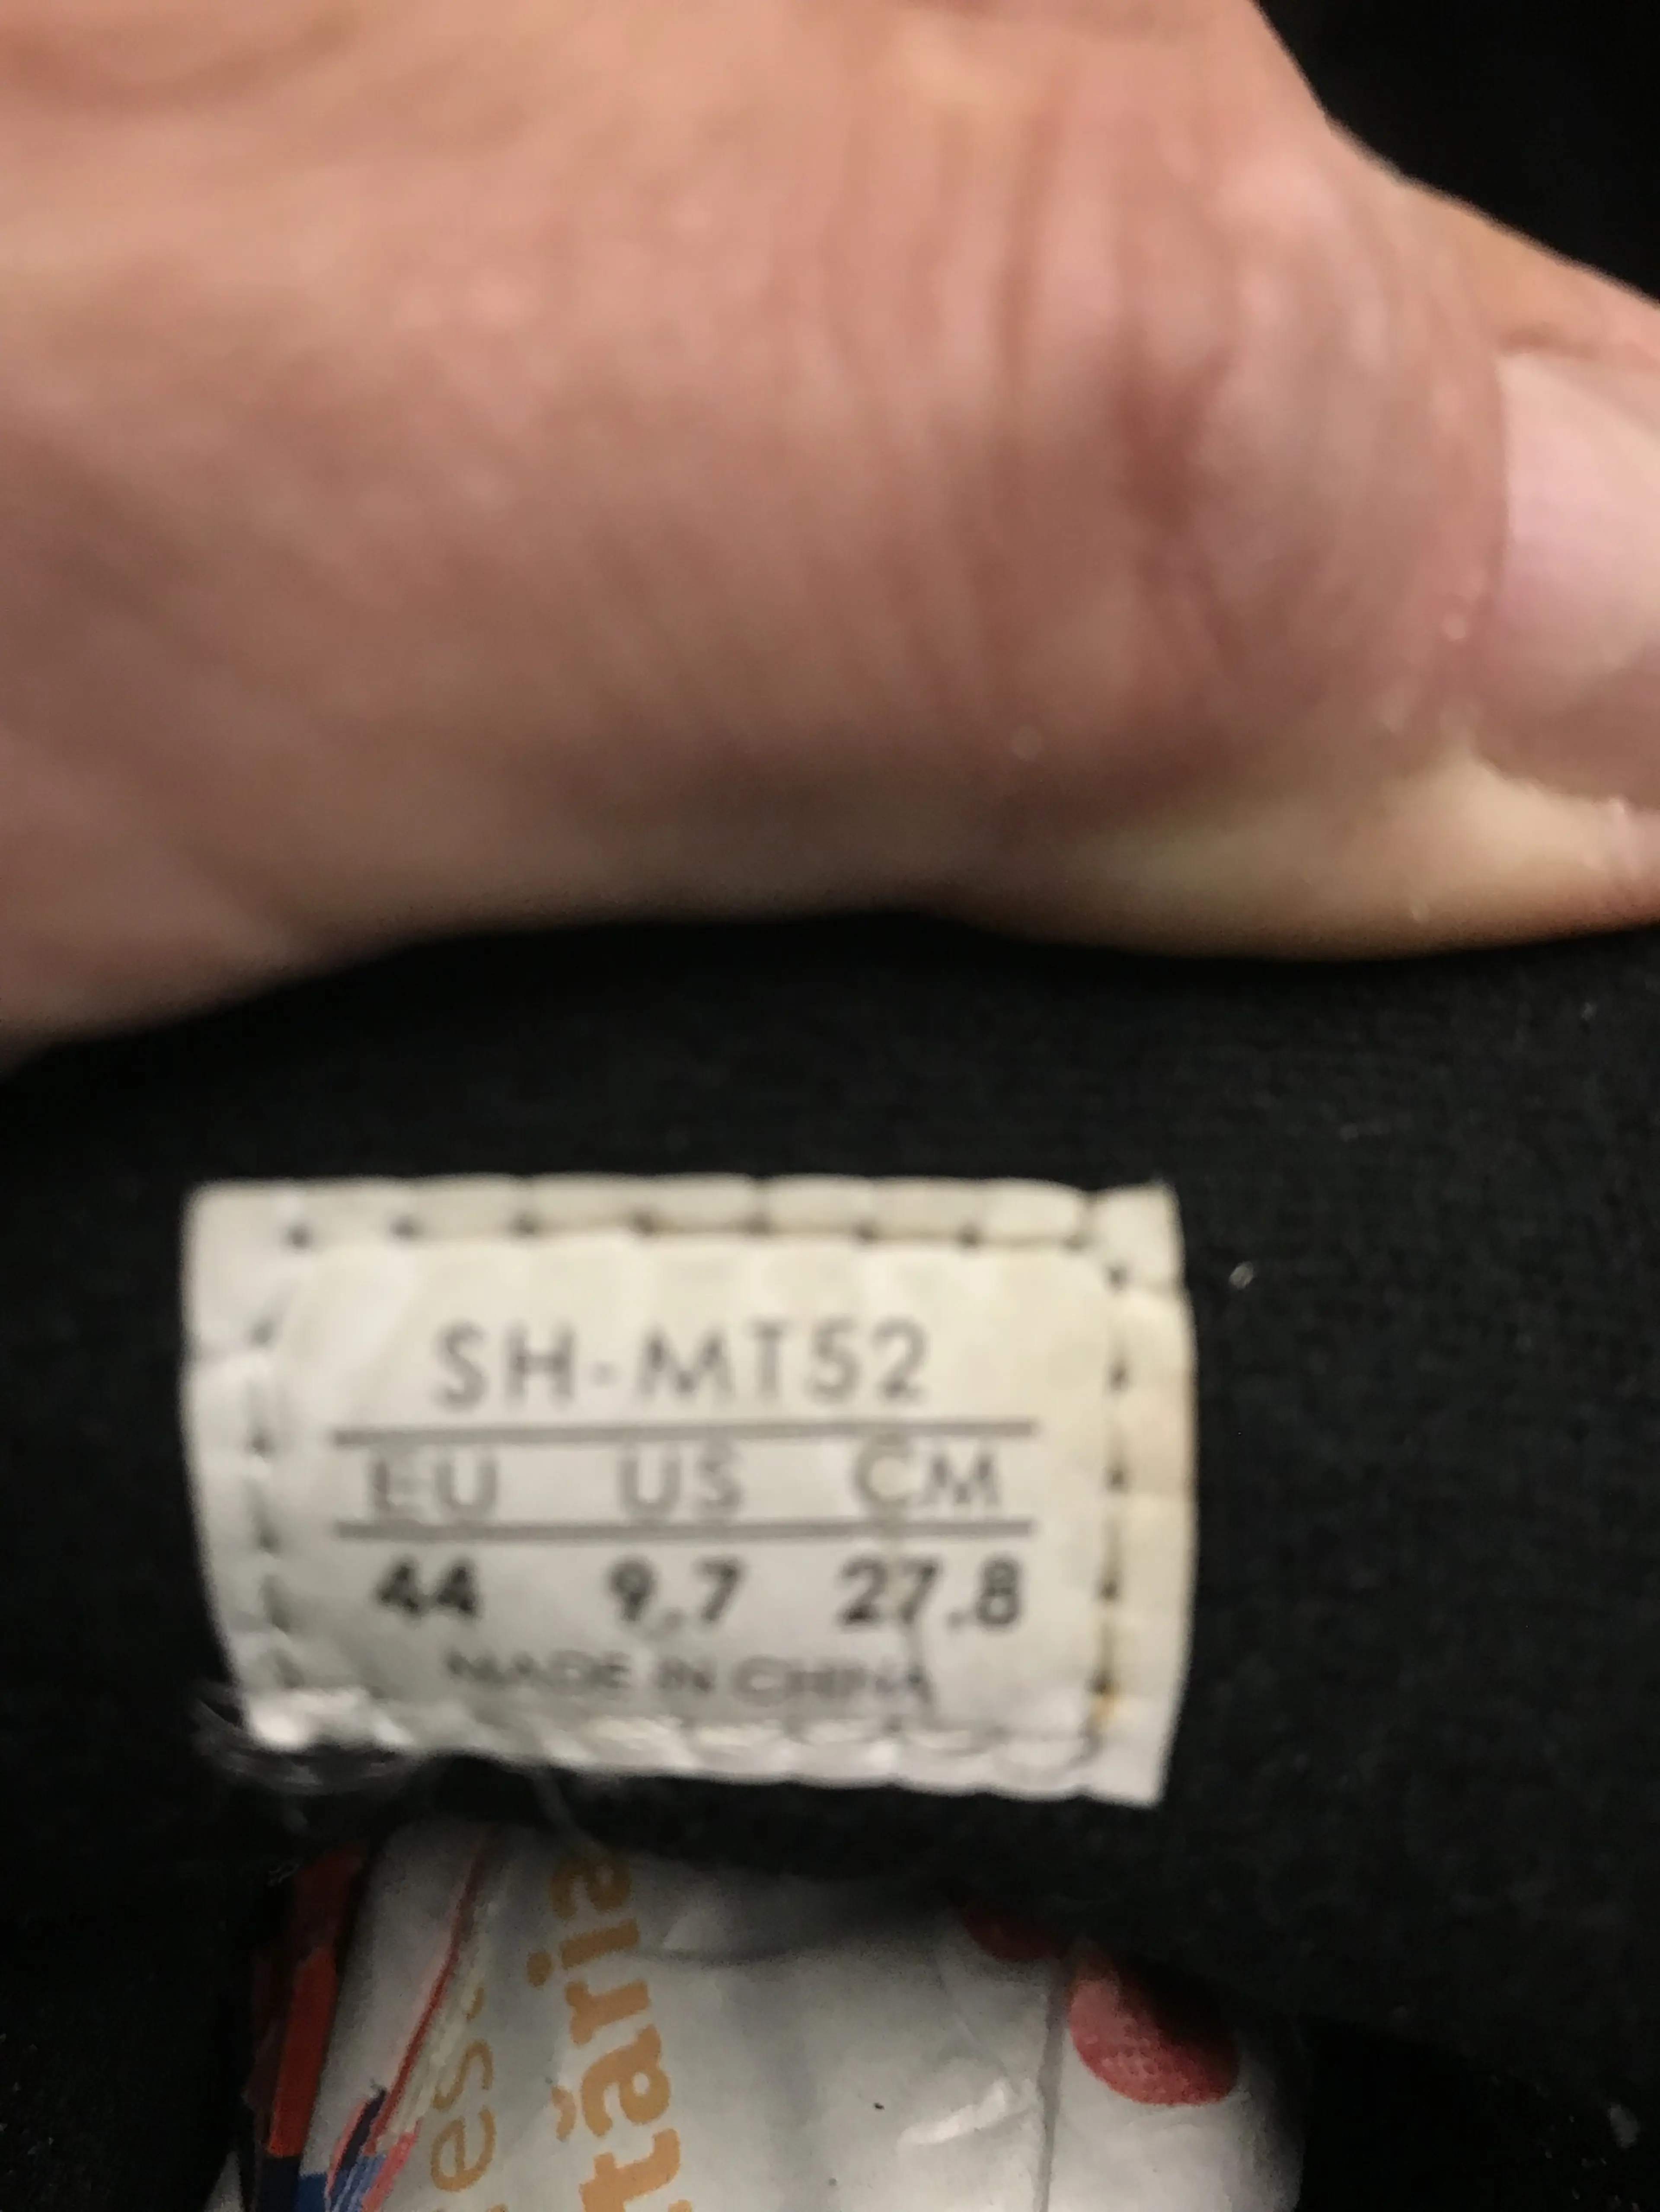 3. Pantofi Shimano Sh-MT52 nr 44, 27.8 cm